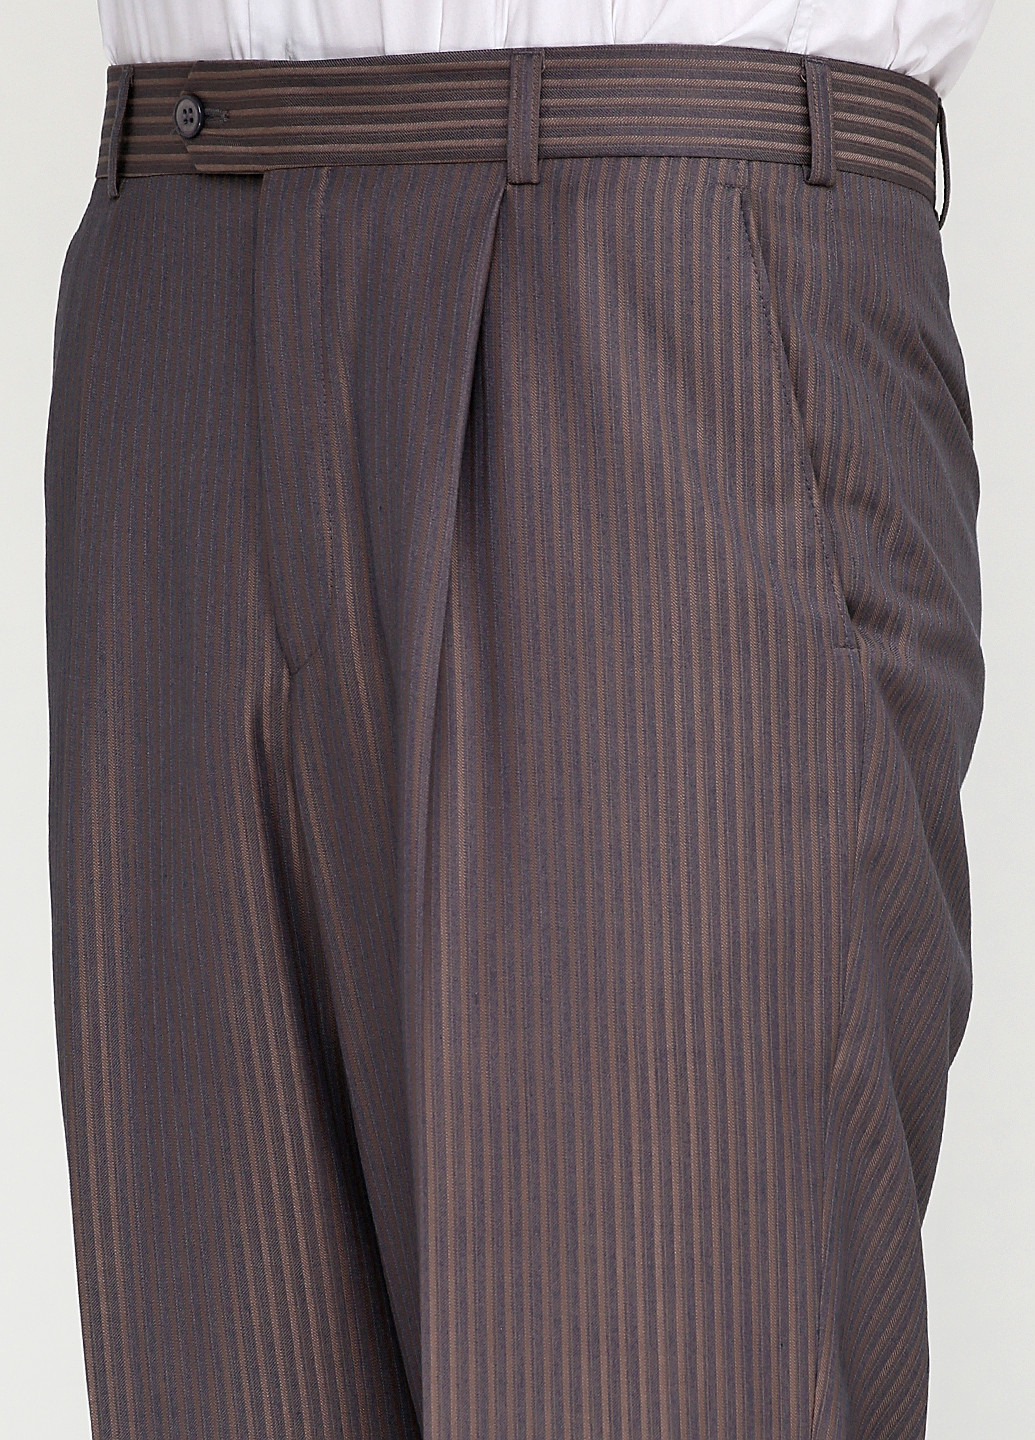 Серо-коричневый демисезонный костюм (пиджак, брюки) брючный Maestro Bravo